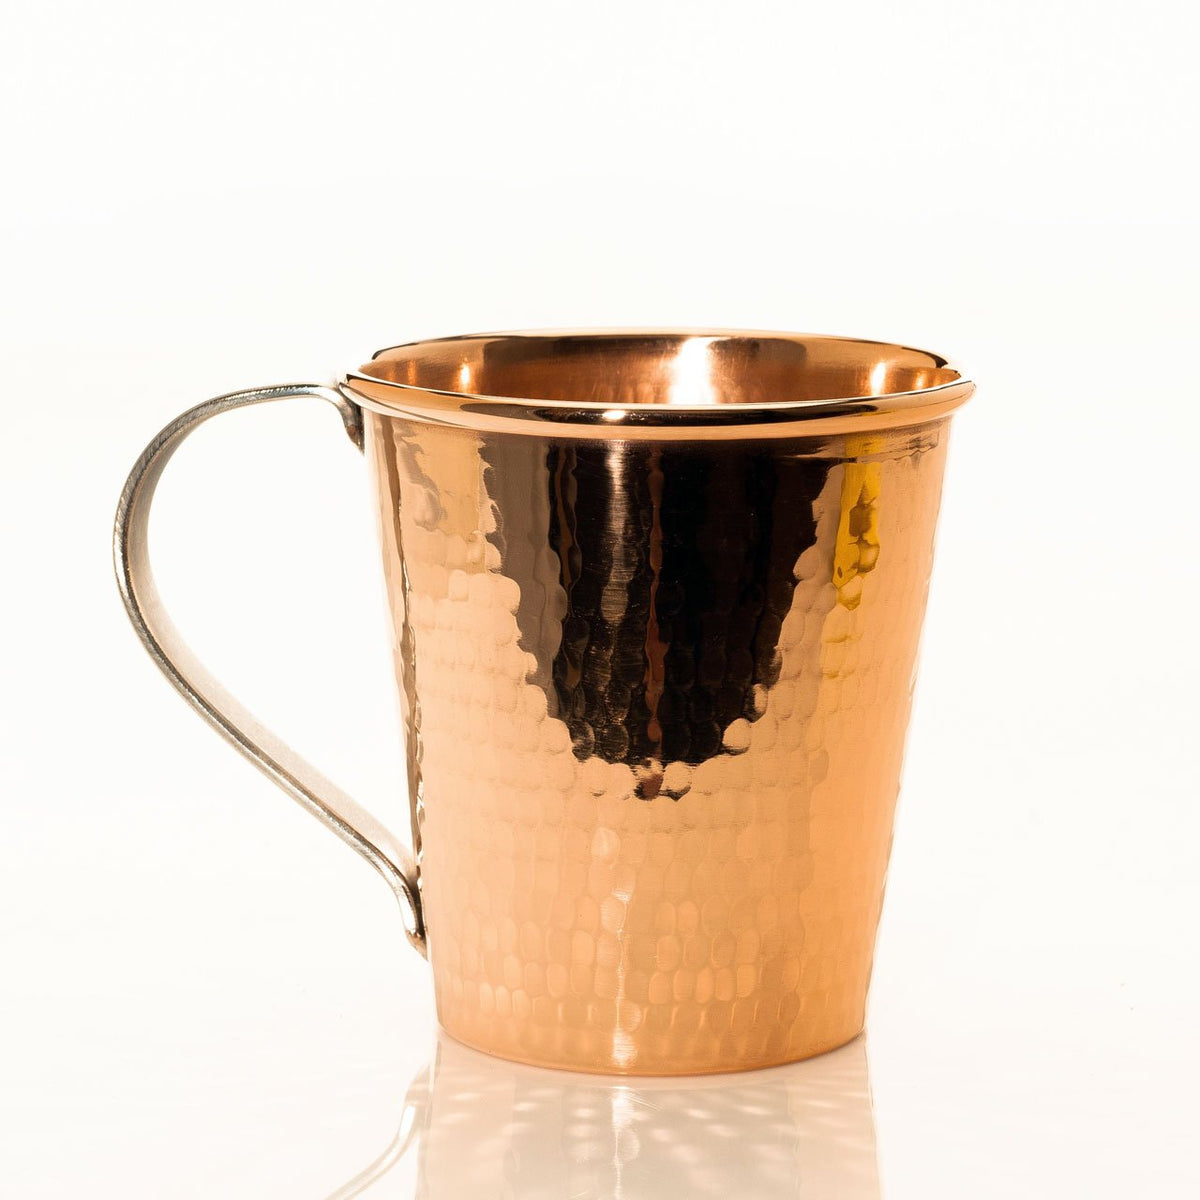 100 copper mug